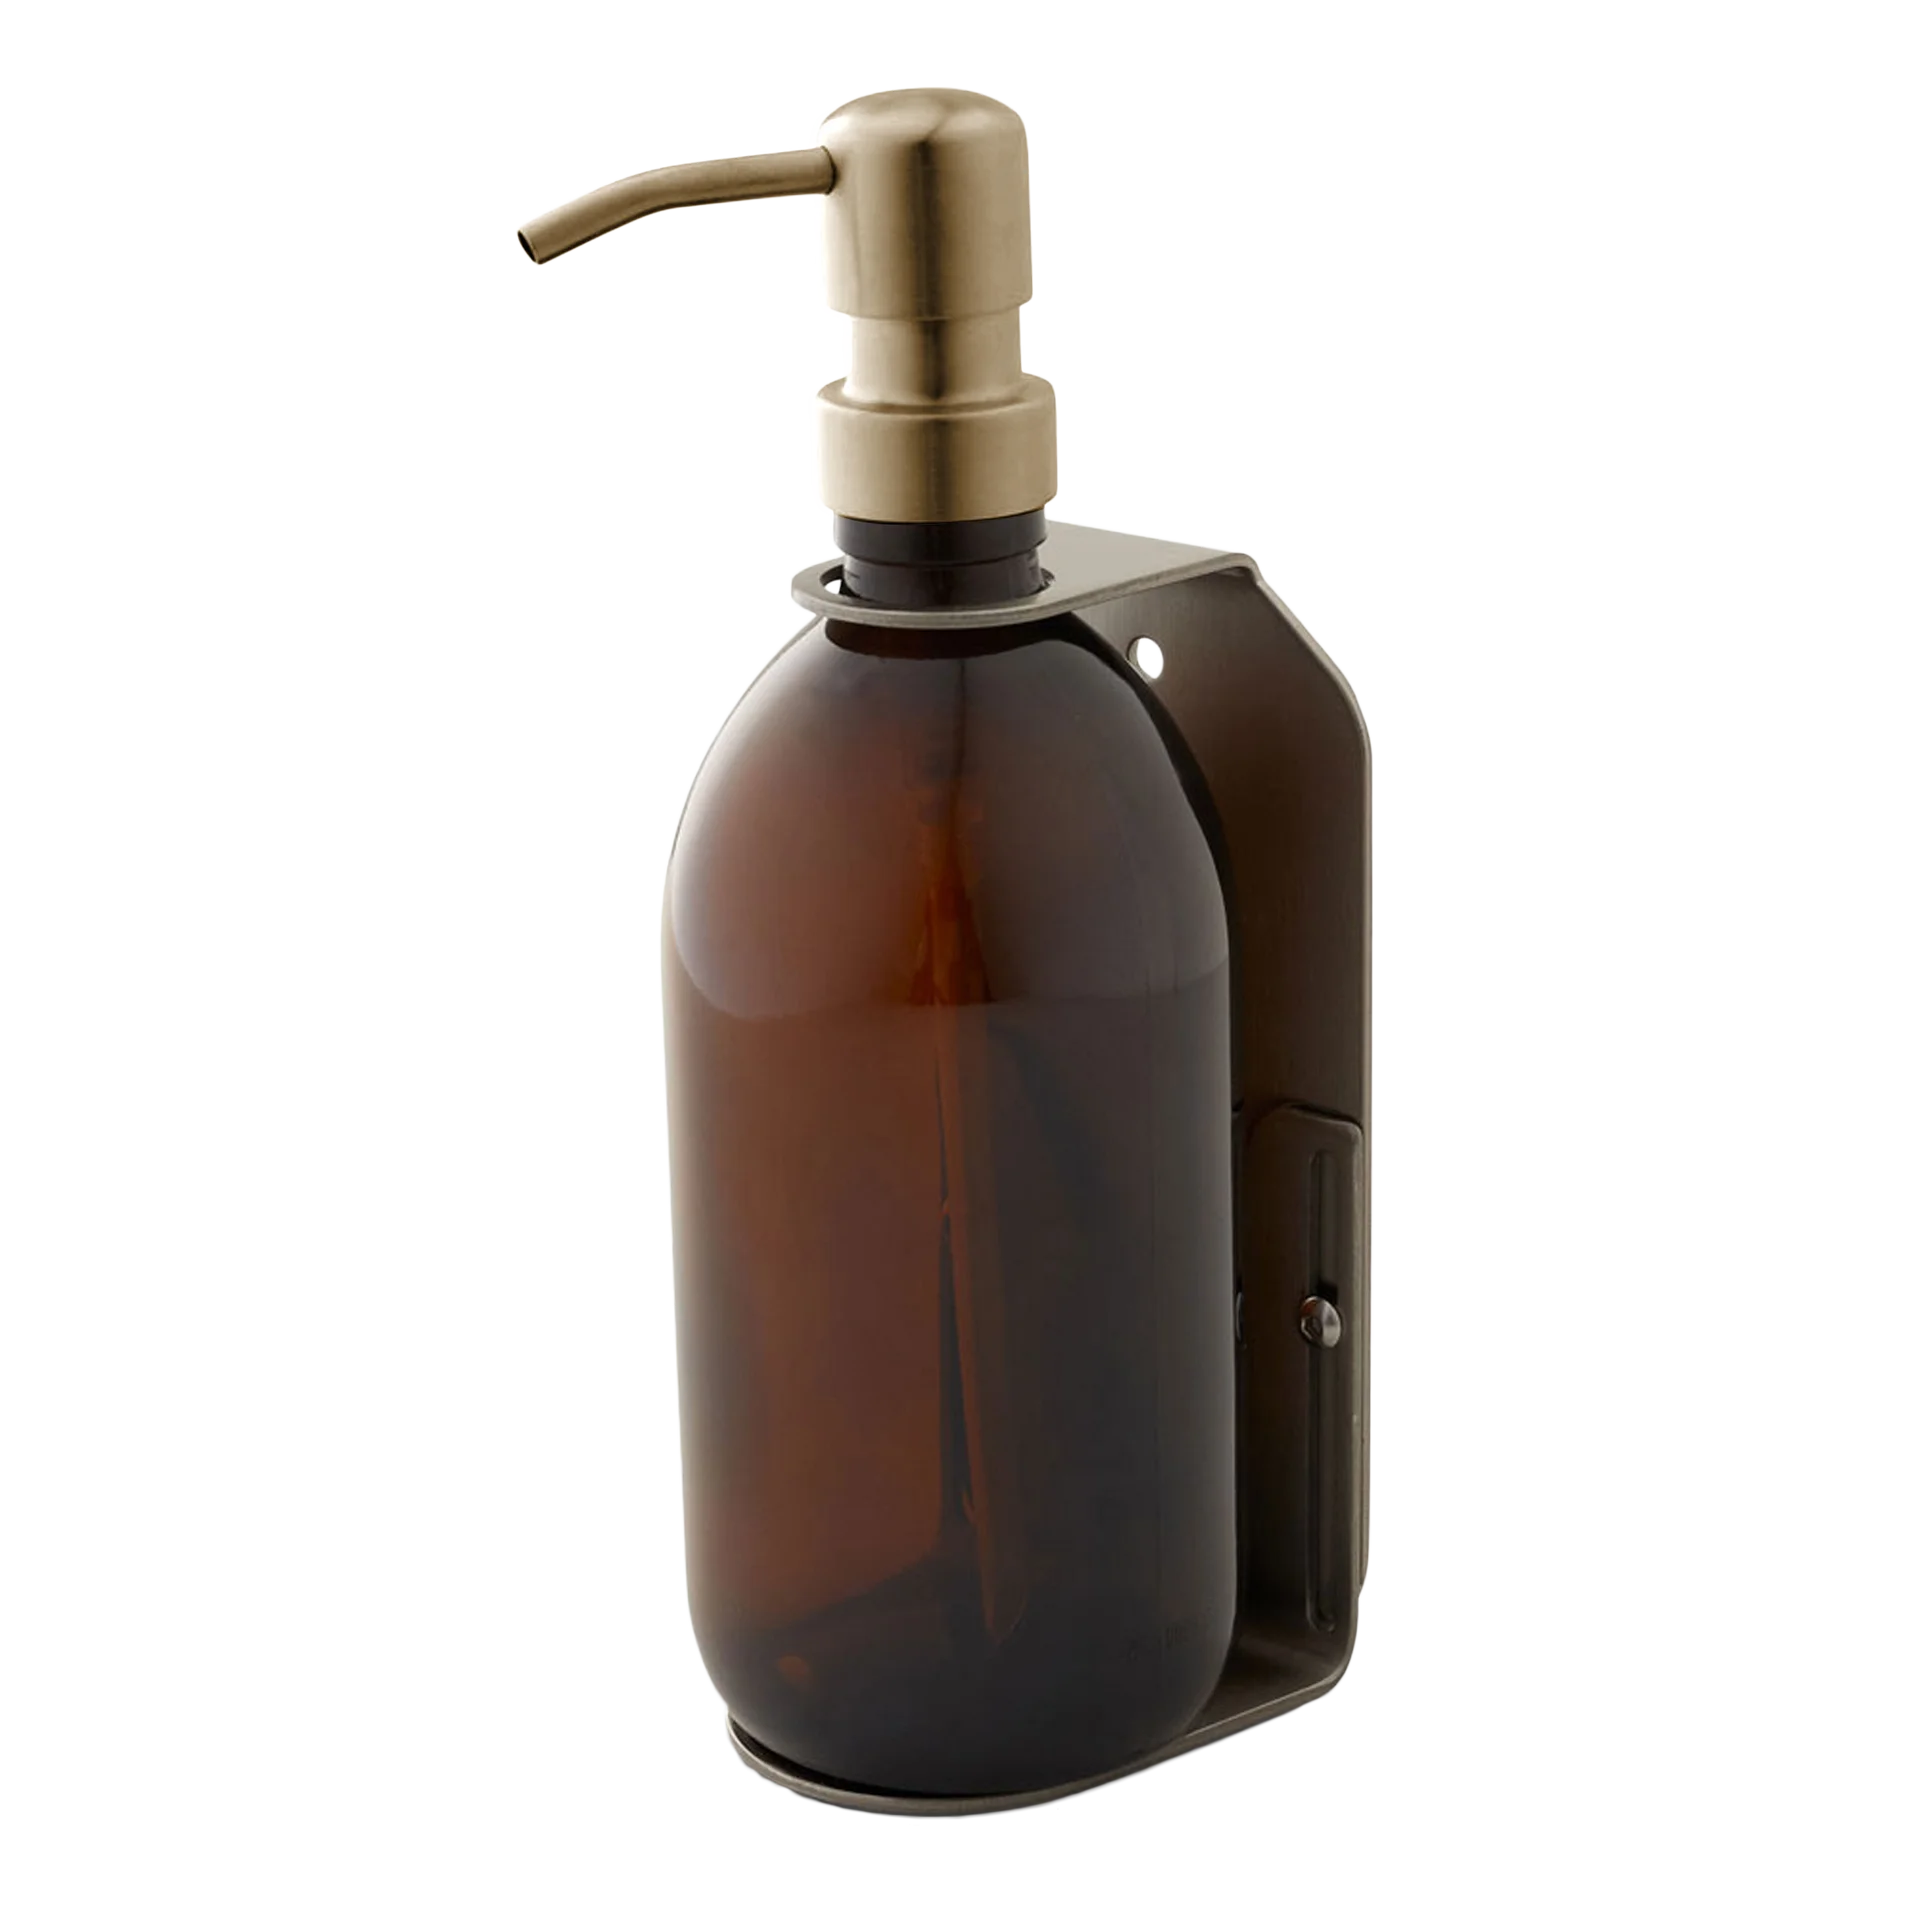 Dispensador de jabón de pared simple plateado satinado ámbar de 500 ml con bomba dosificadora dorada